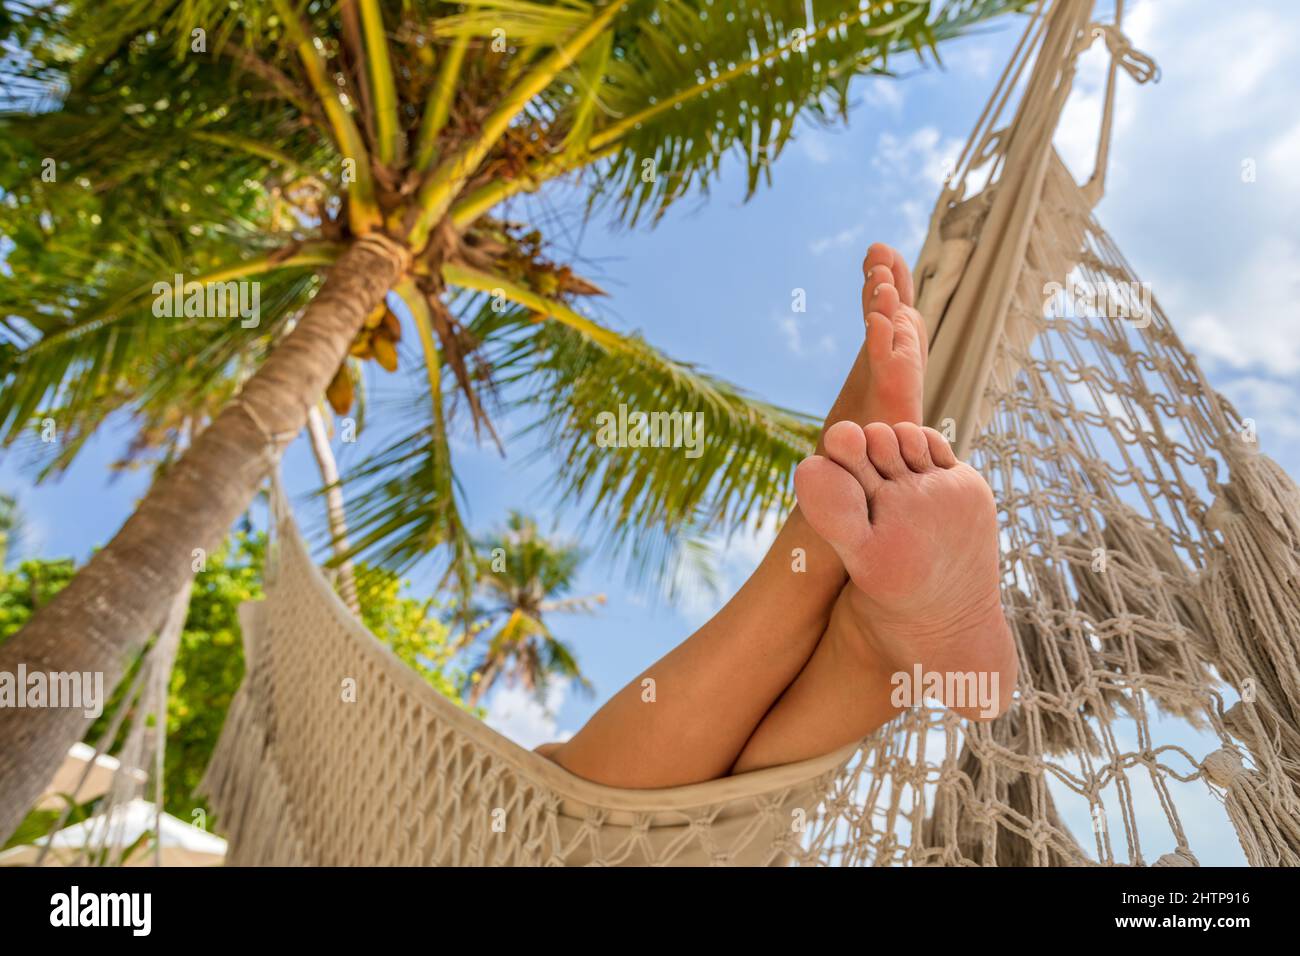 Vacaciones relajantes en la playa con pies de mujer en una hamaca entre palmeras de coco. Exótico complejo hotelero en una isla tropical. Soleado día cálido con cielo azul. Foto de stock